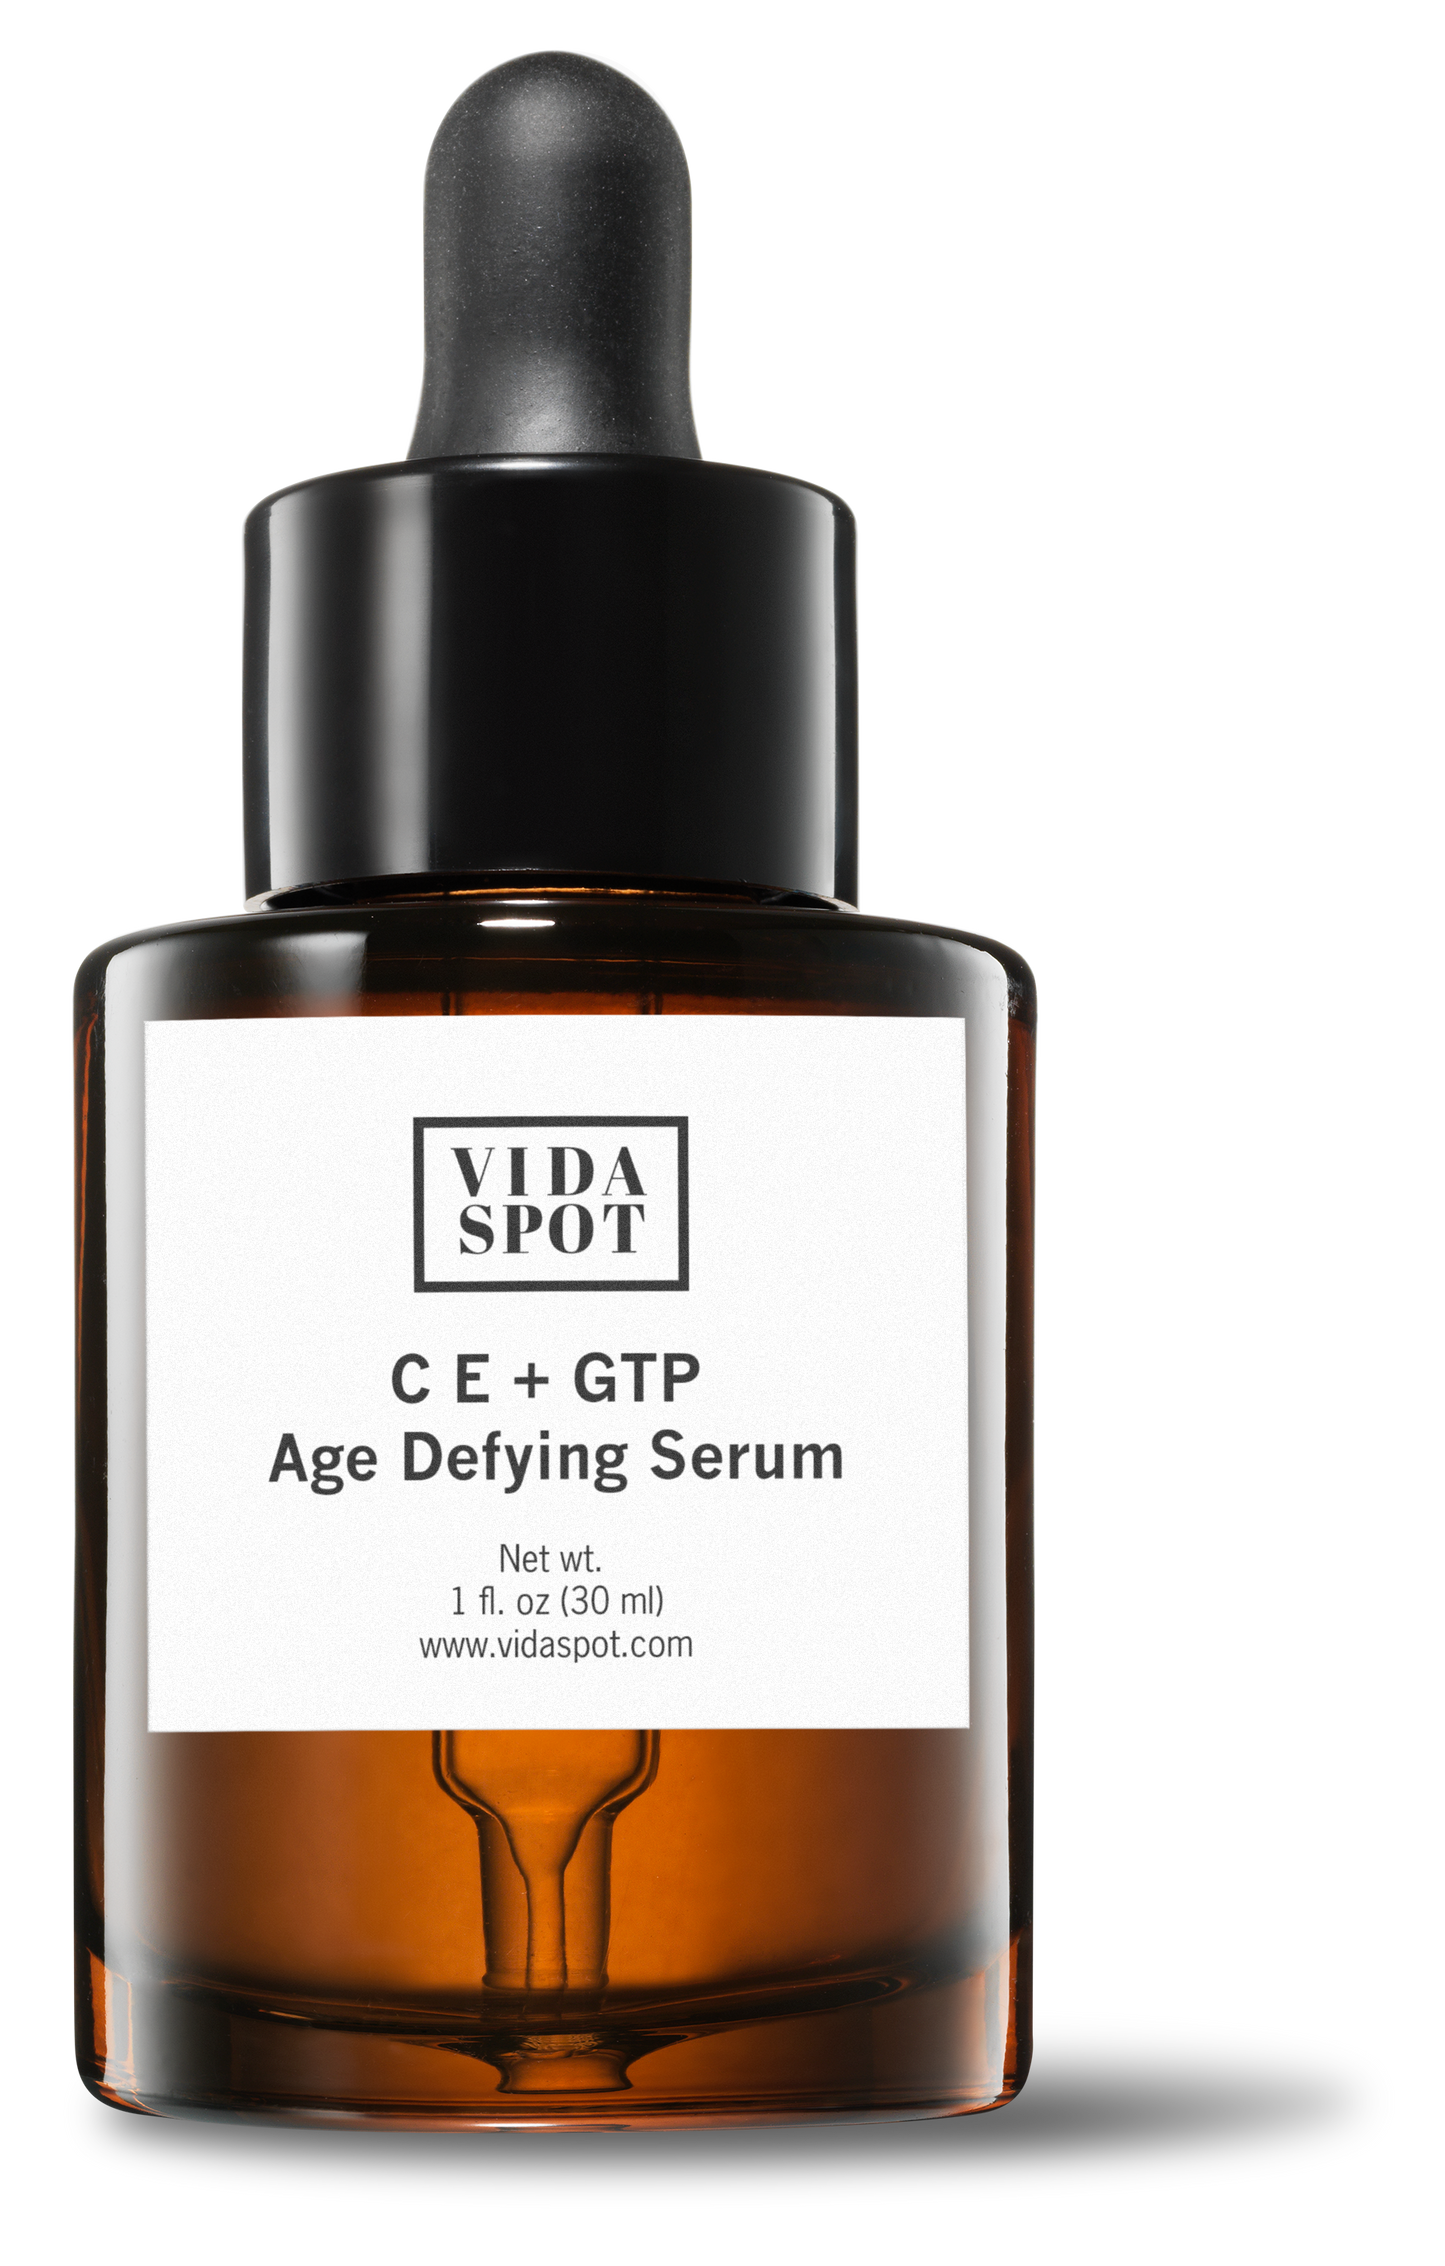 Vitamin CE + GTP Age Defying Serum